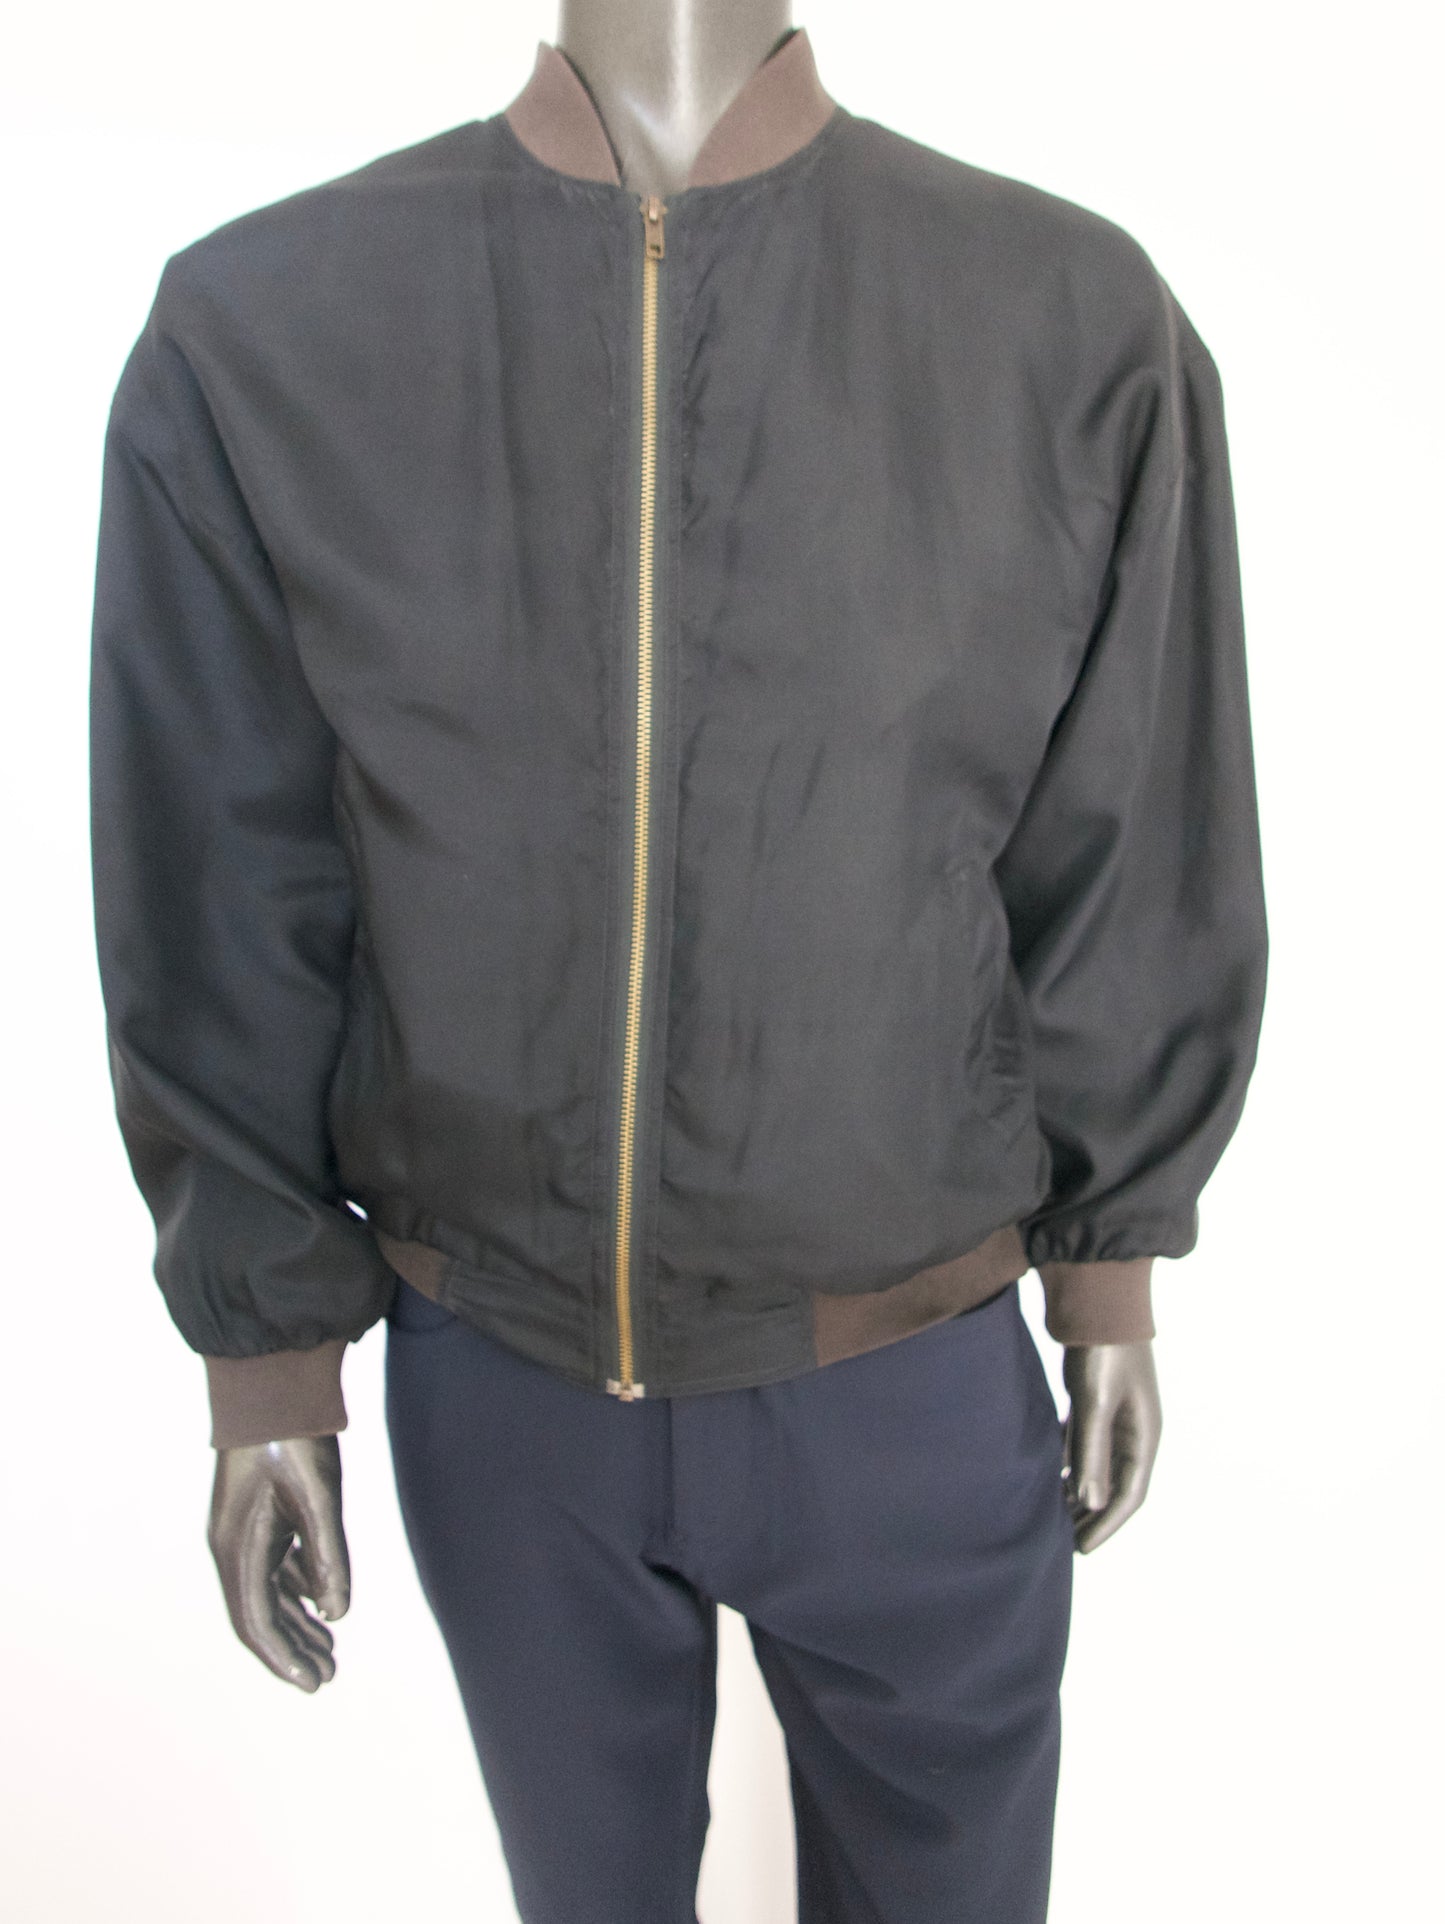 Montage Silk Bomber Jacket, Size Large